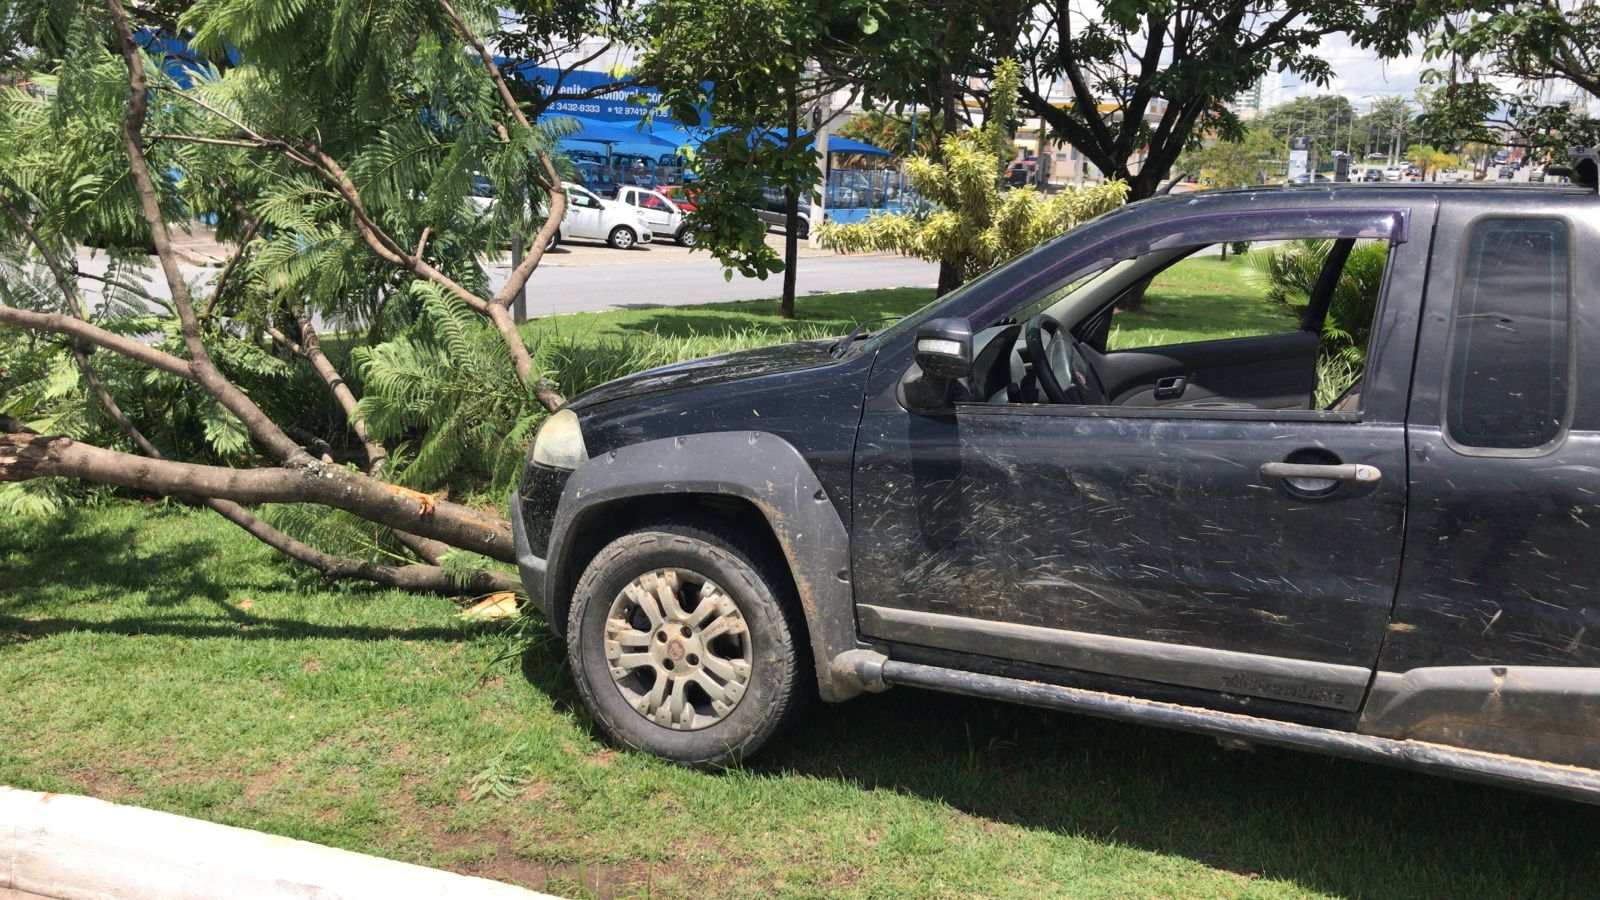 Homem é preso após colidir contra árvore em perseguição com polícia, em Taubaté